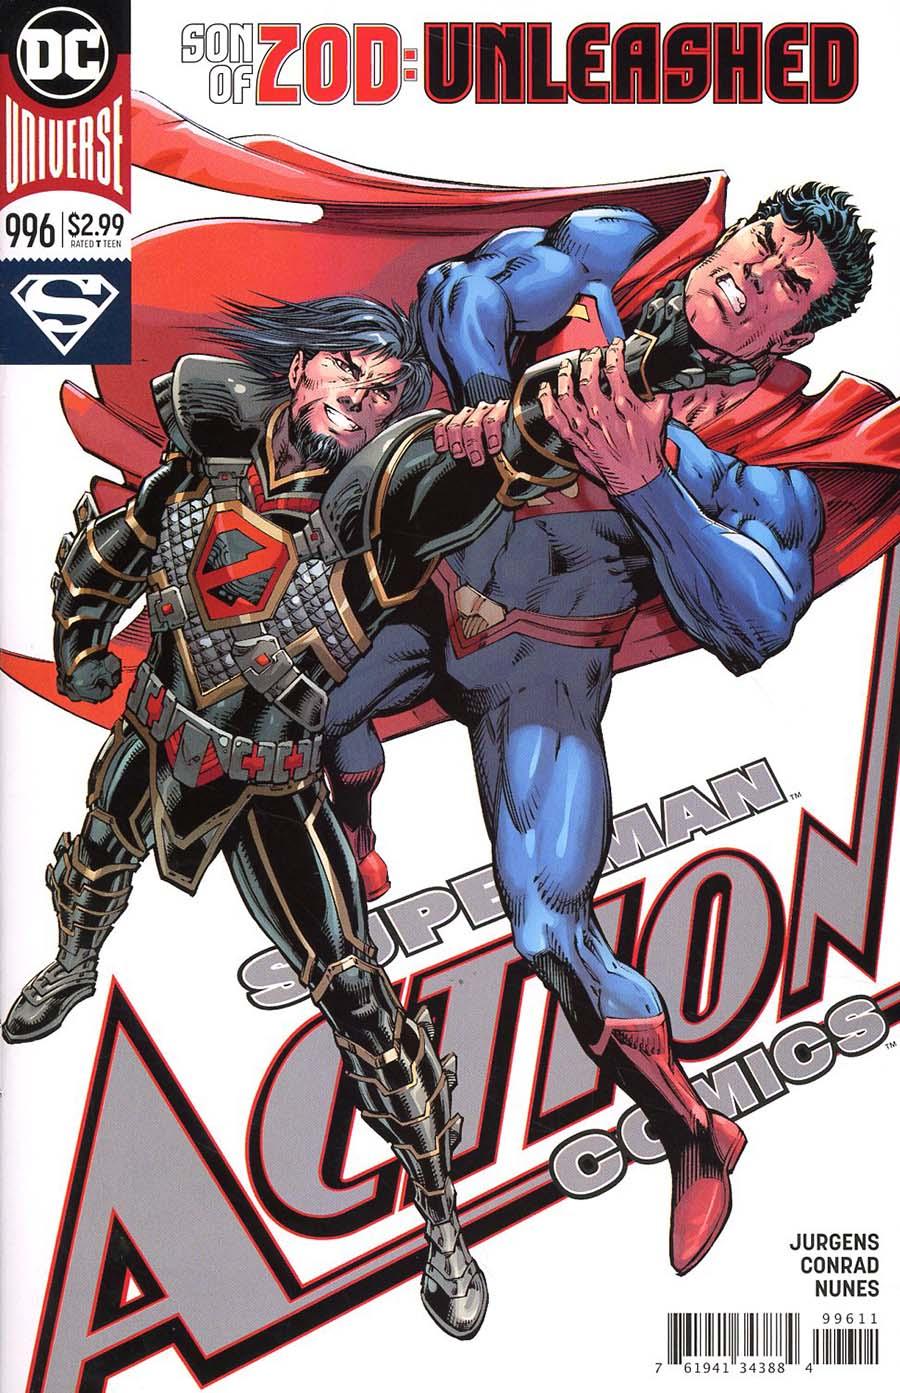 Action Comics Vol. 2 #996